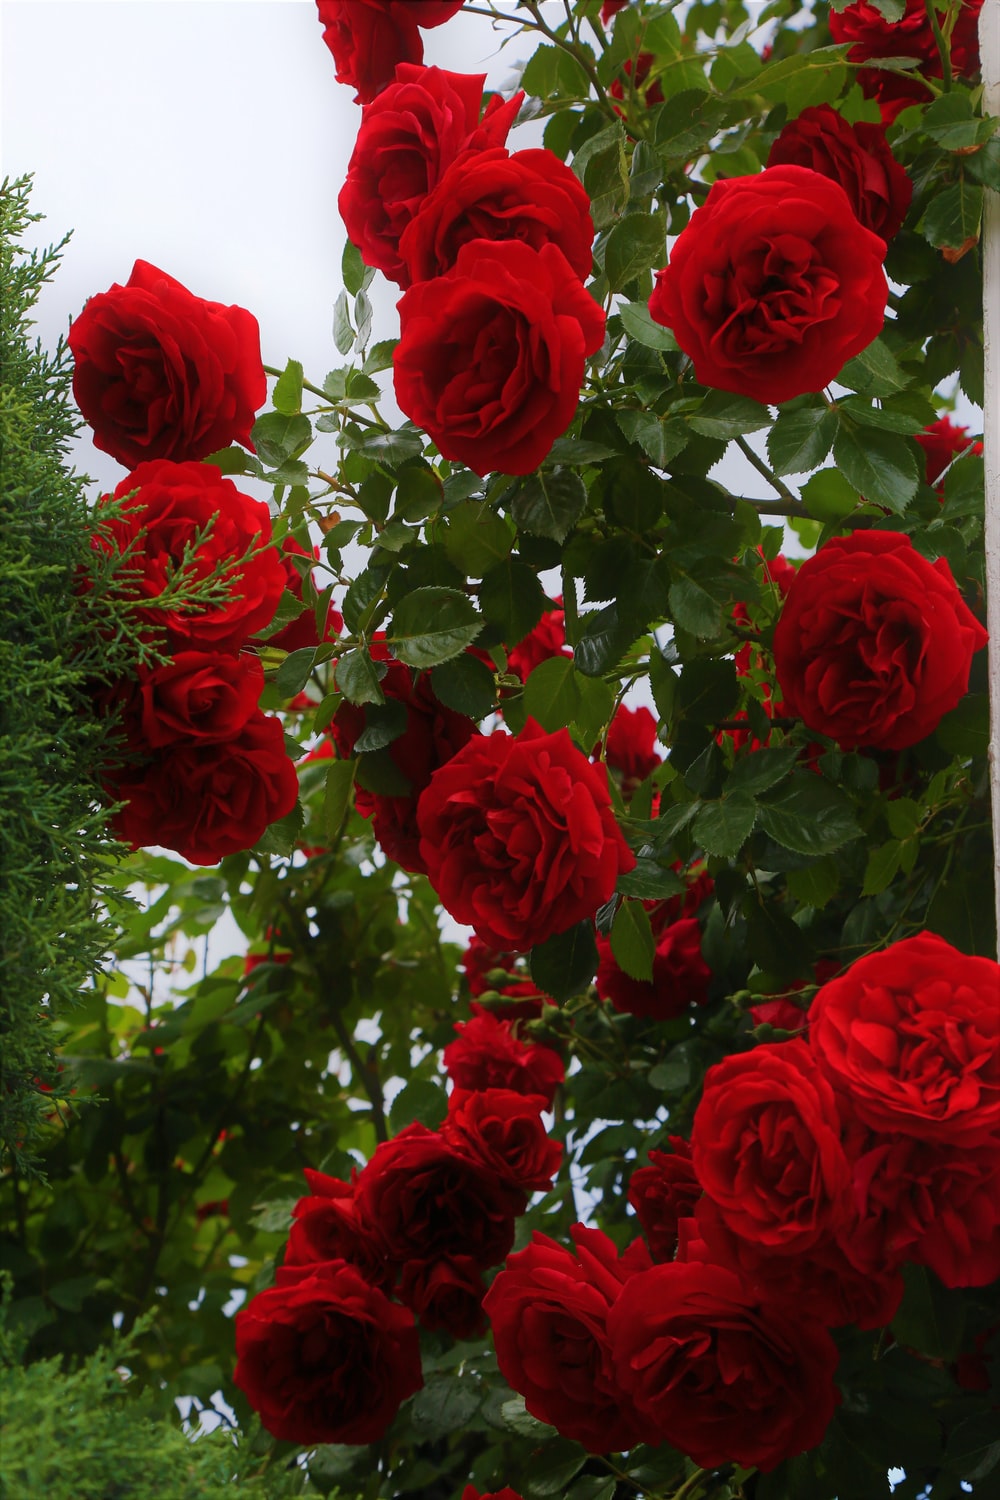 Rose Flower Images Gallery - KibrisPDR